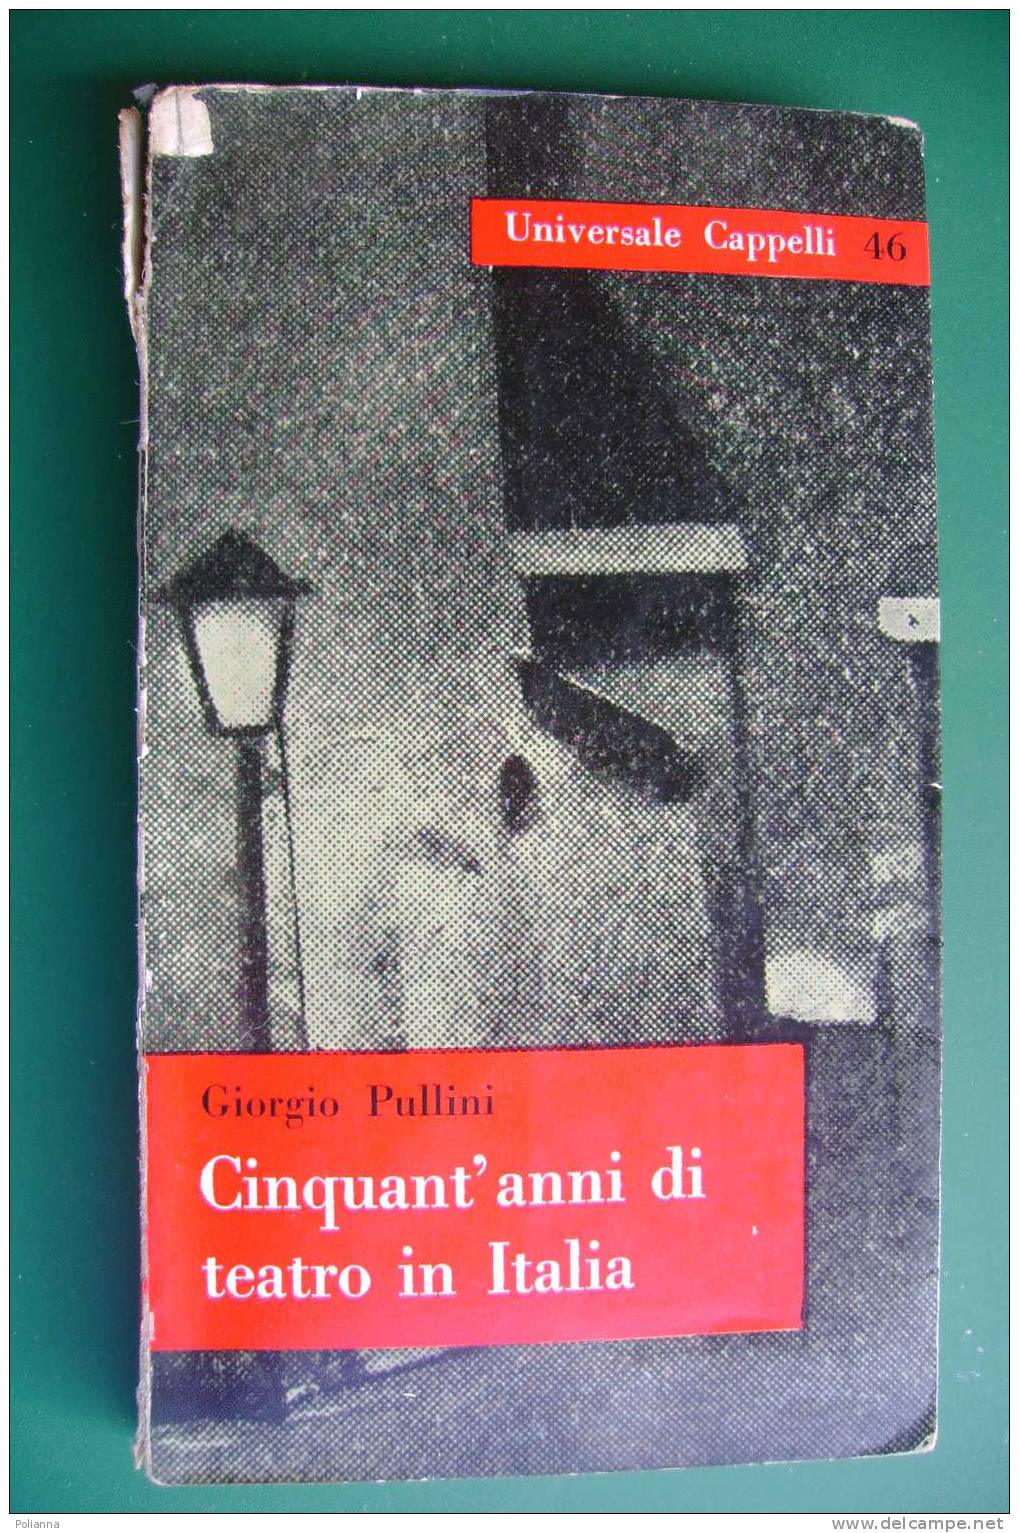 PDD/32 Giorgio Pullini CINQUANT'ANNI DI TEATRO IN ITALIA Universale Cappelli 1960/Eleonora Duse/Edoardo De Filippo - Theatre